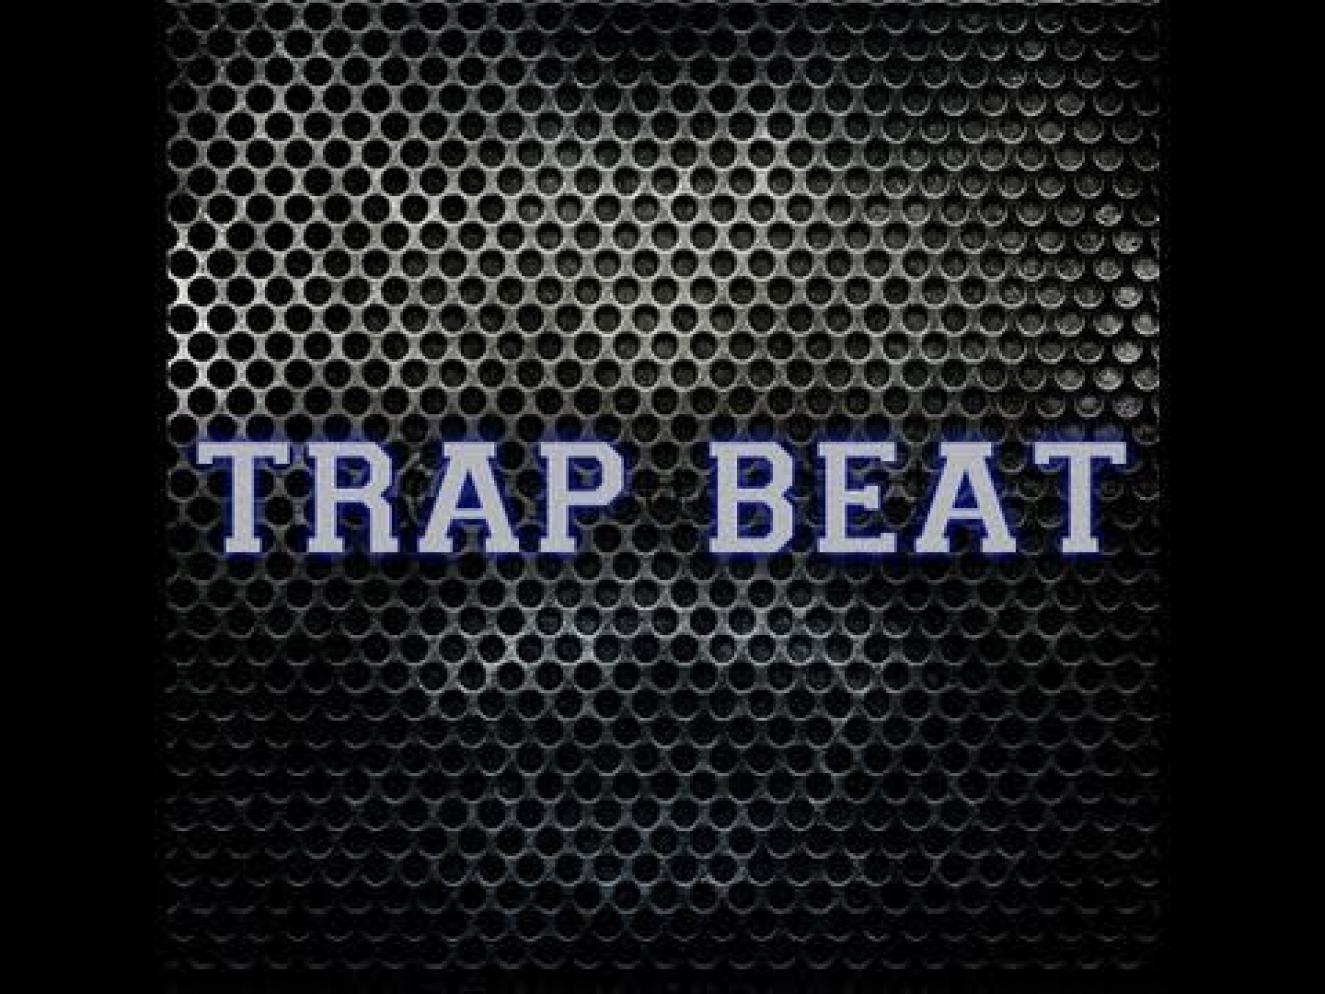 Трап бит. Bear Trap. Trap Beat. Trap Beat обложка.